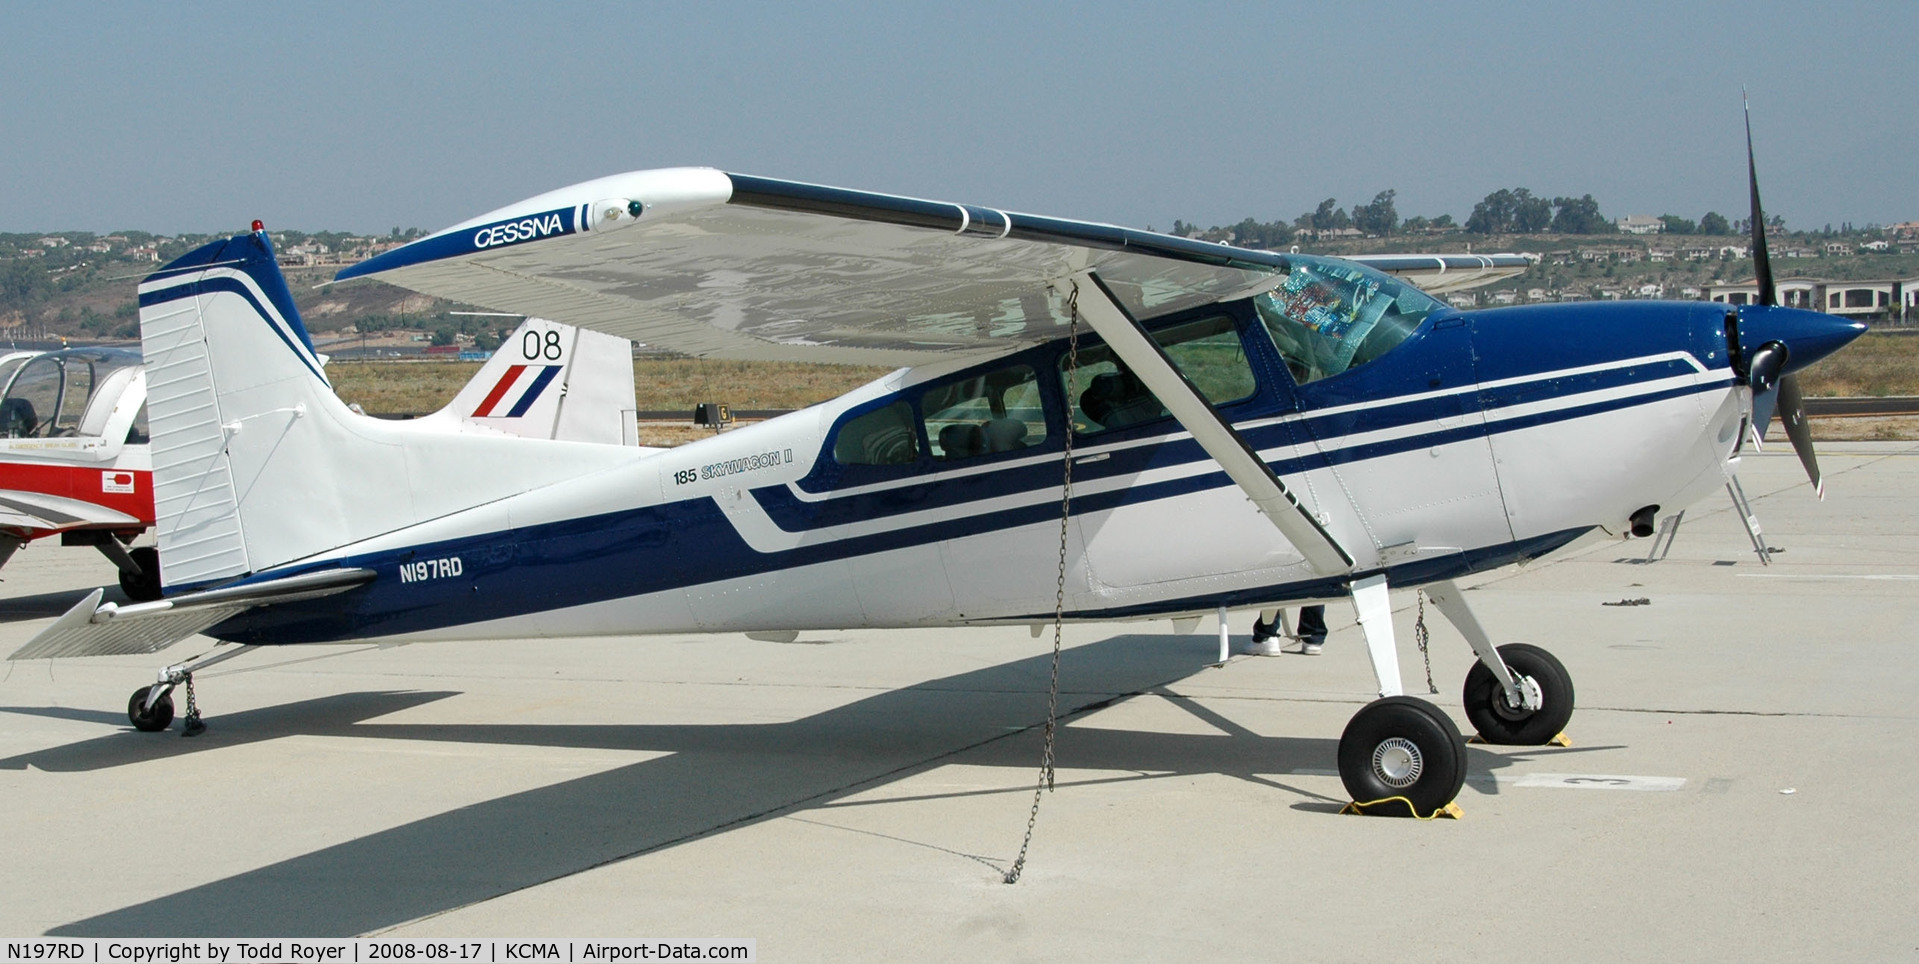 N197RD, 1978 Cessna A185F Skywagon 185 C/N 18503681, Camarillo Airshow 2008